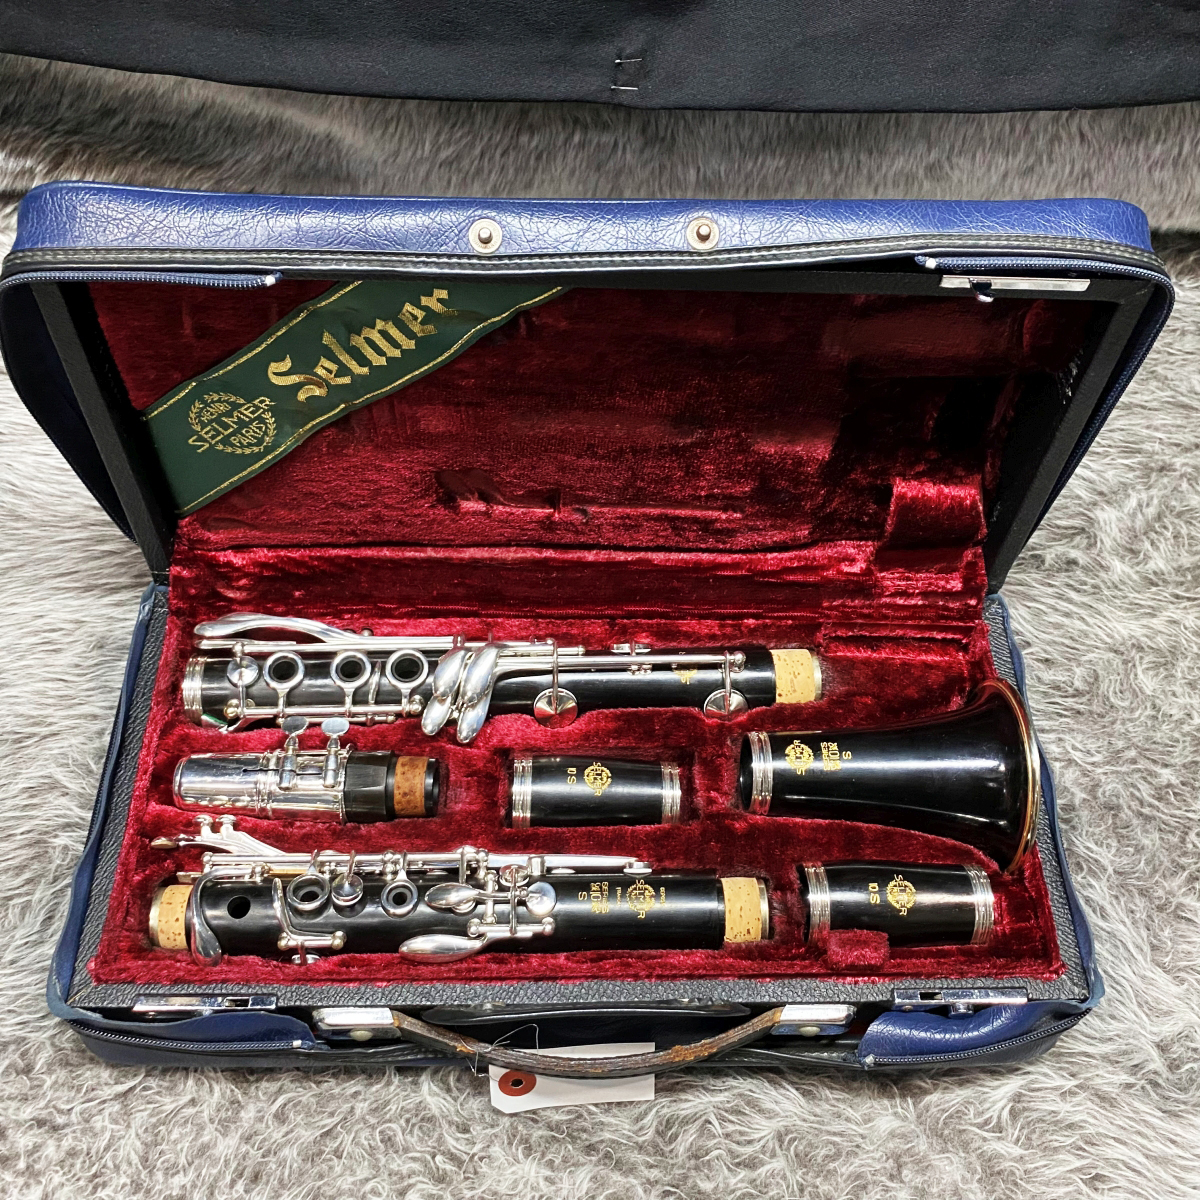 ご購入頂く際の注意とお願い良品　セルマー　シリーズ10S Bb菅　クラリネット　グラナディラ　 管楽器